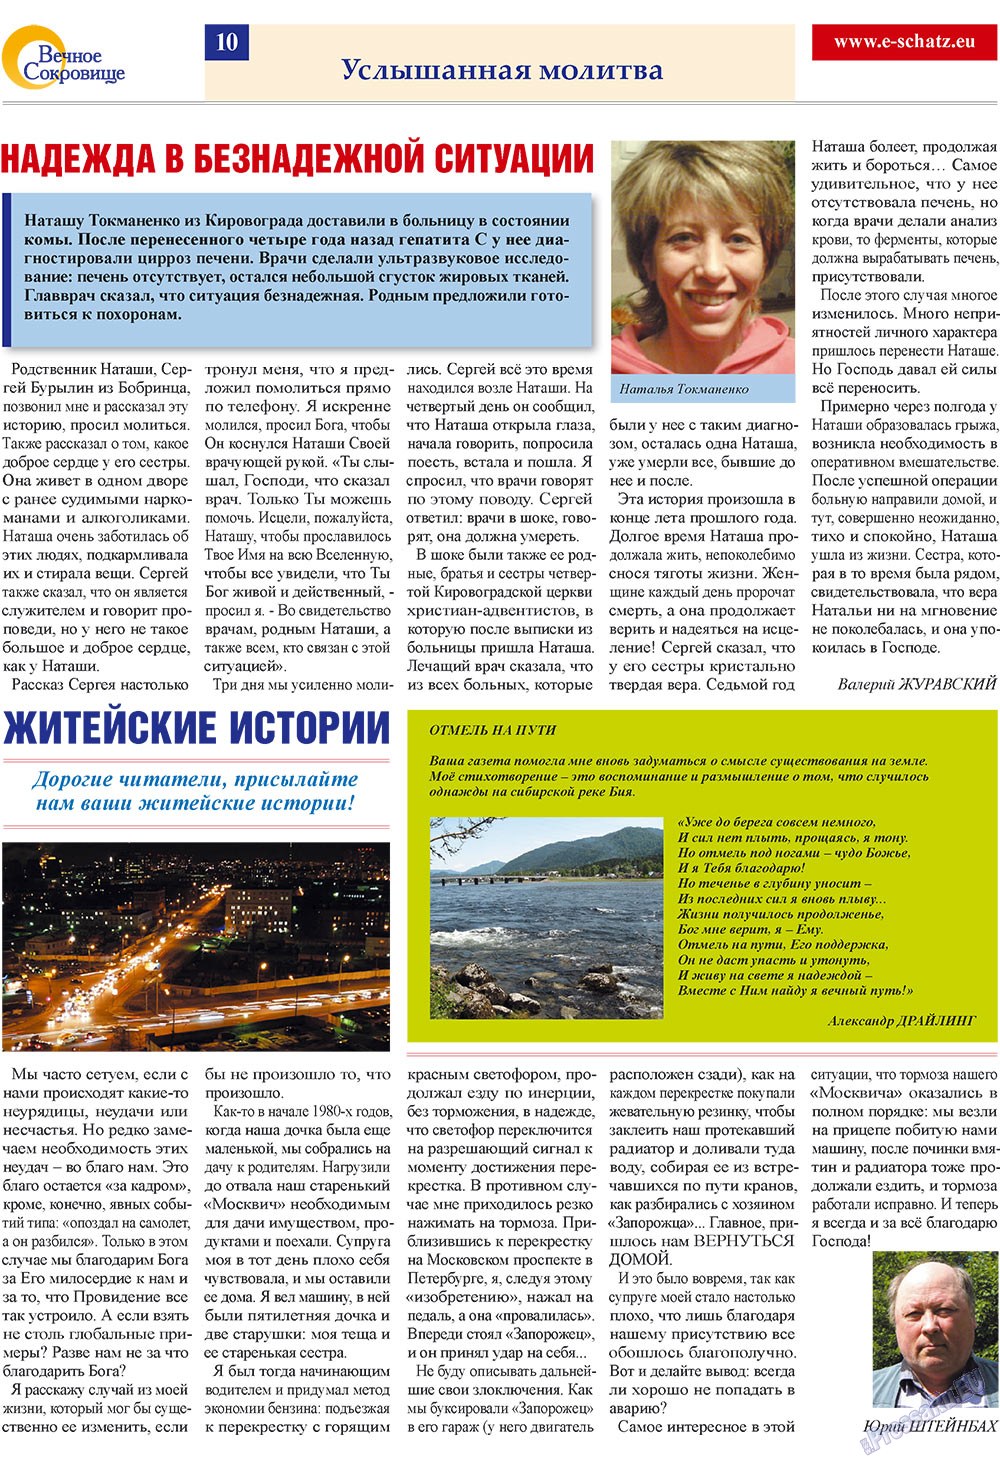 Вечное сокровище, газета. 2009 №3 стр.10